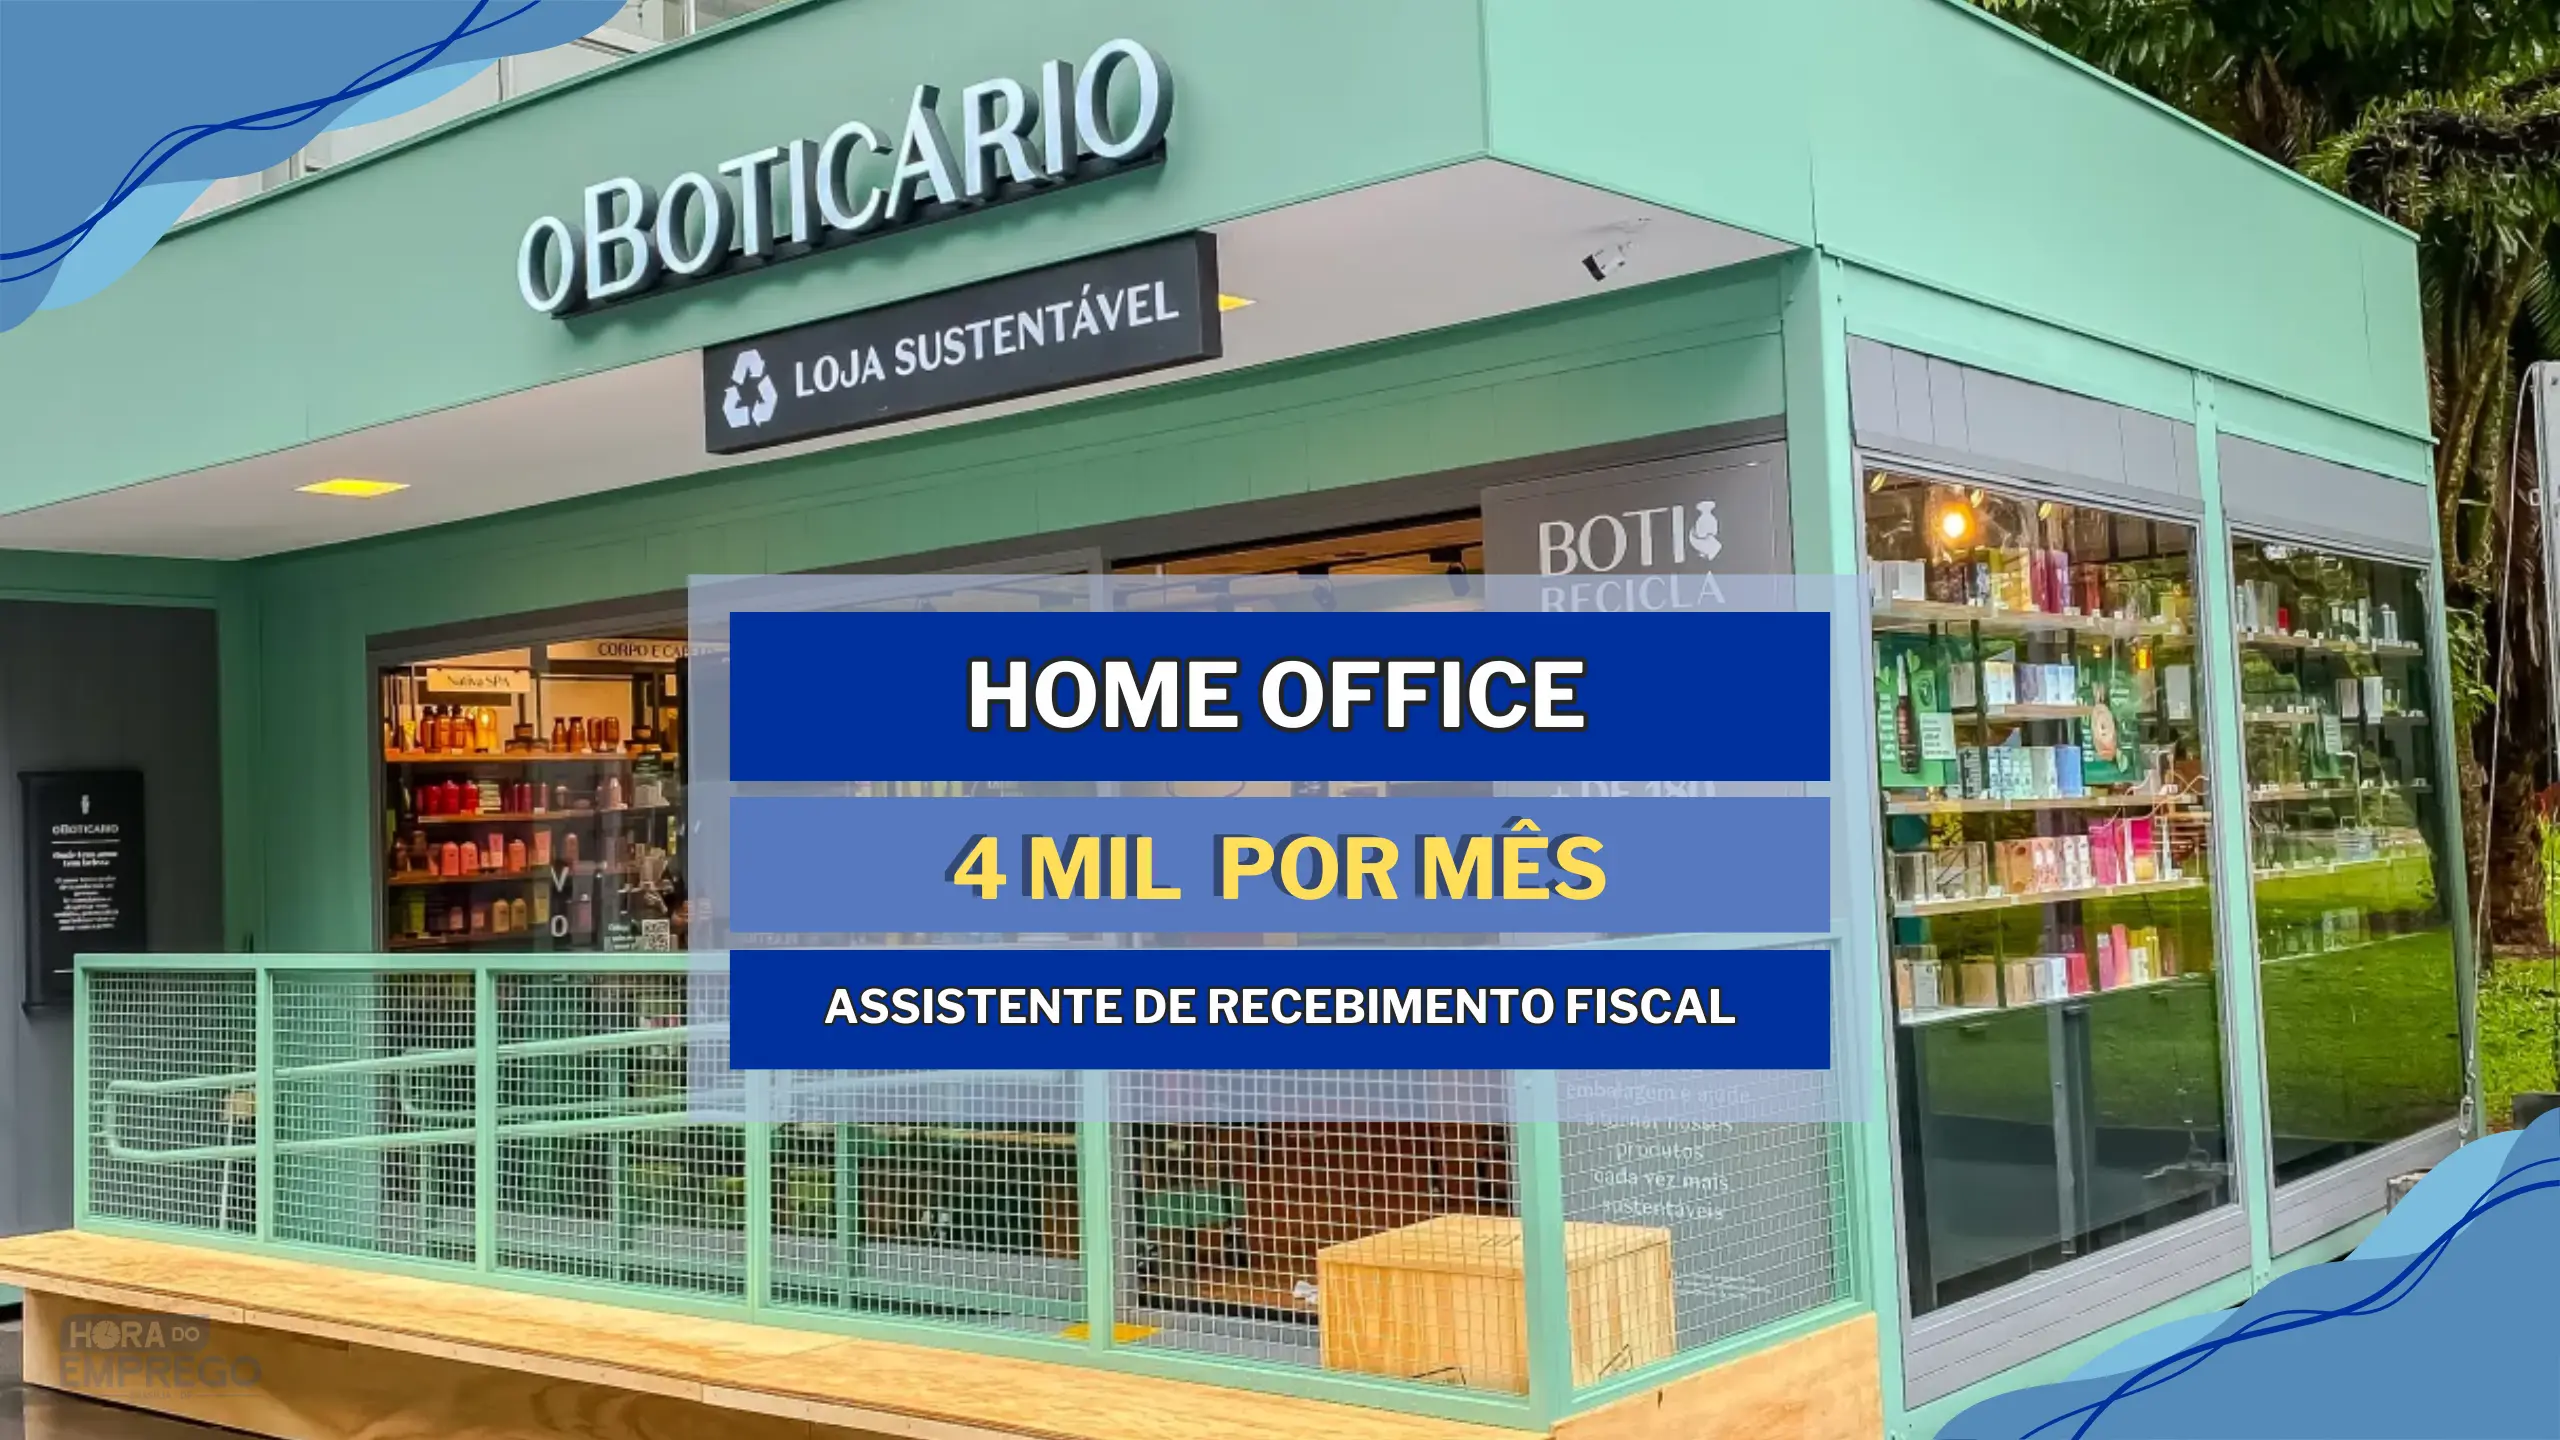 Grupo O Boticário abriu vagas HOME OFFICE para TRABALHAR DE CASA com salário de até 4 MIL para Assistente de Recebimento Fiscal